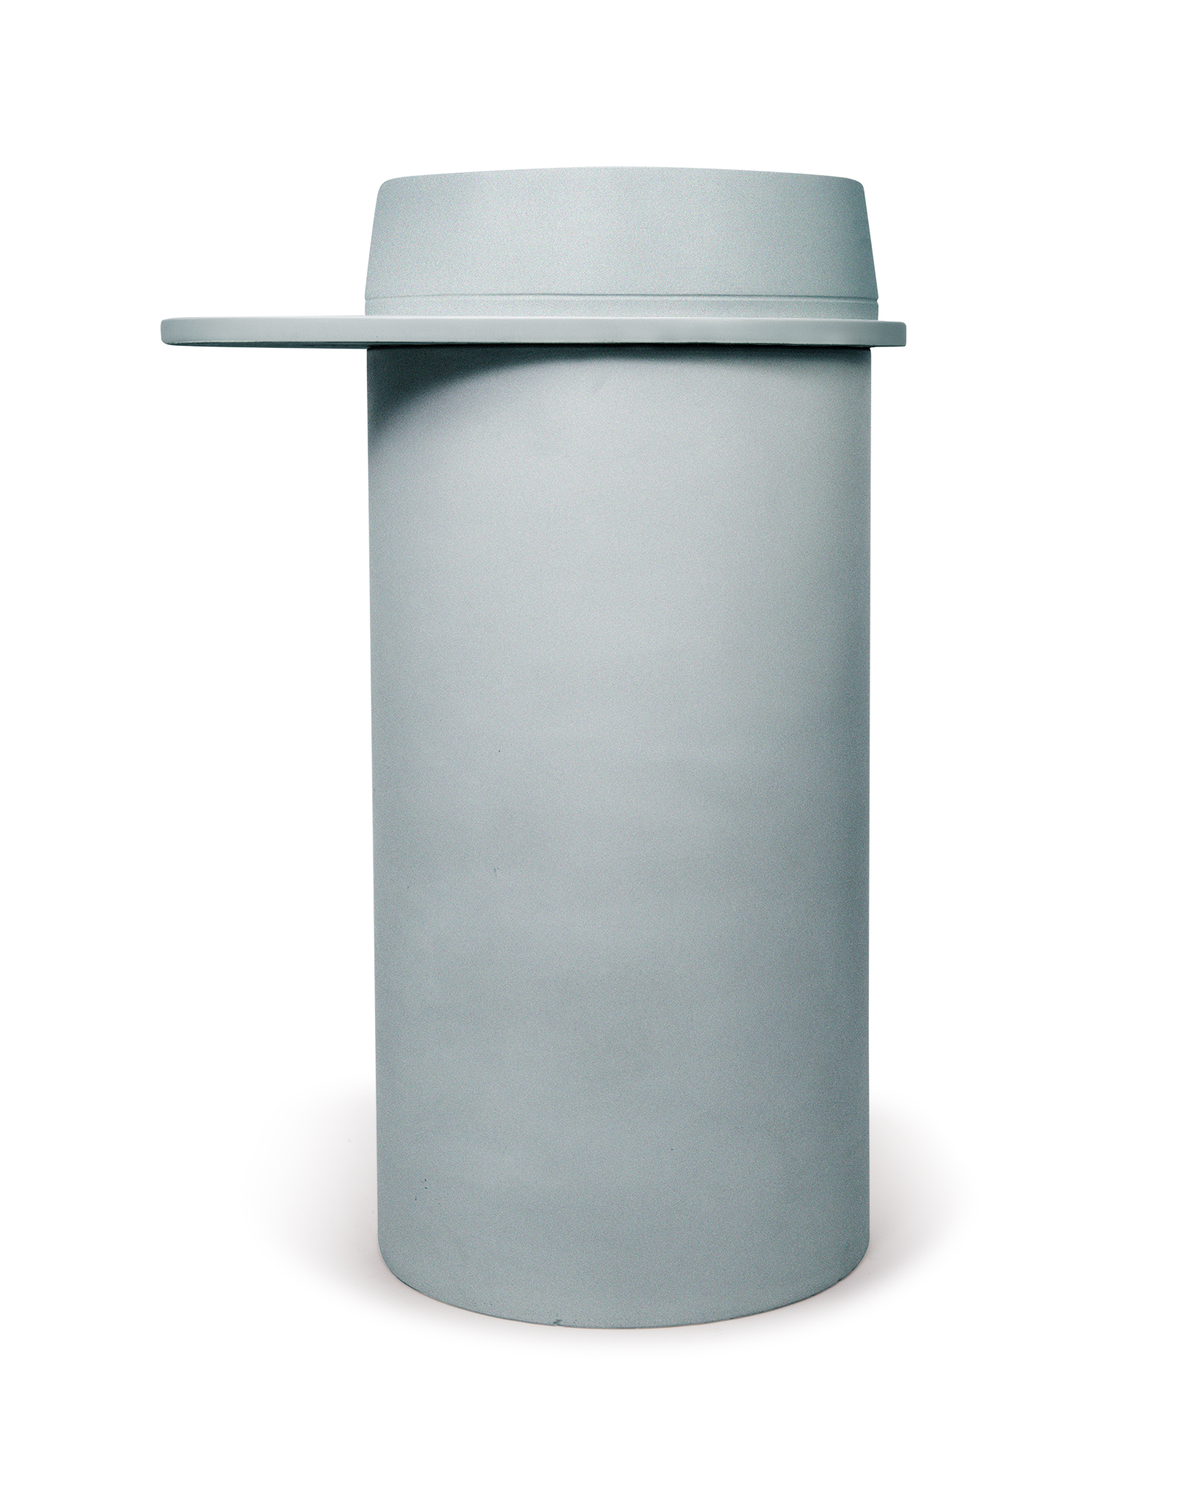 Cylinder - Funl Basin (Powder Blue)